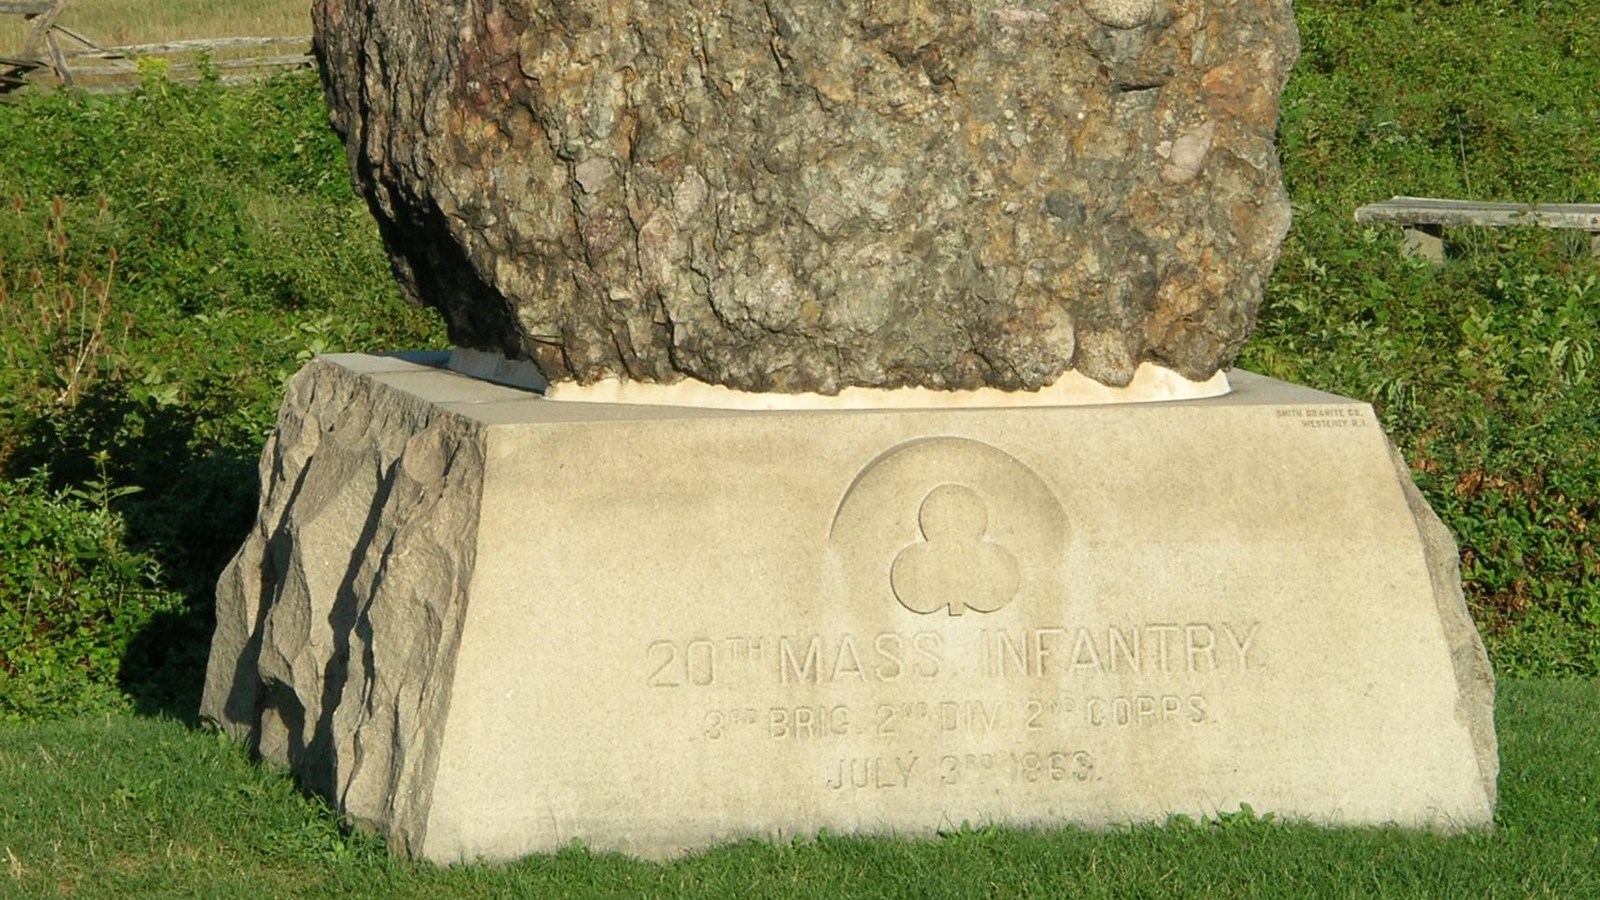 A large boulder on a granite pedestal 